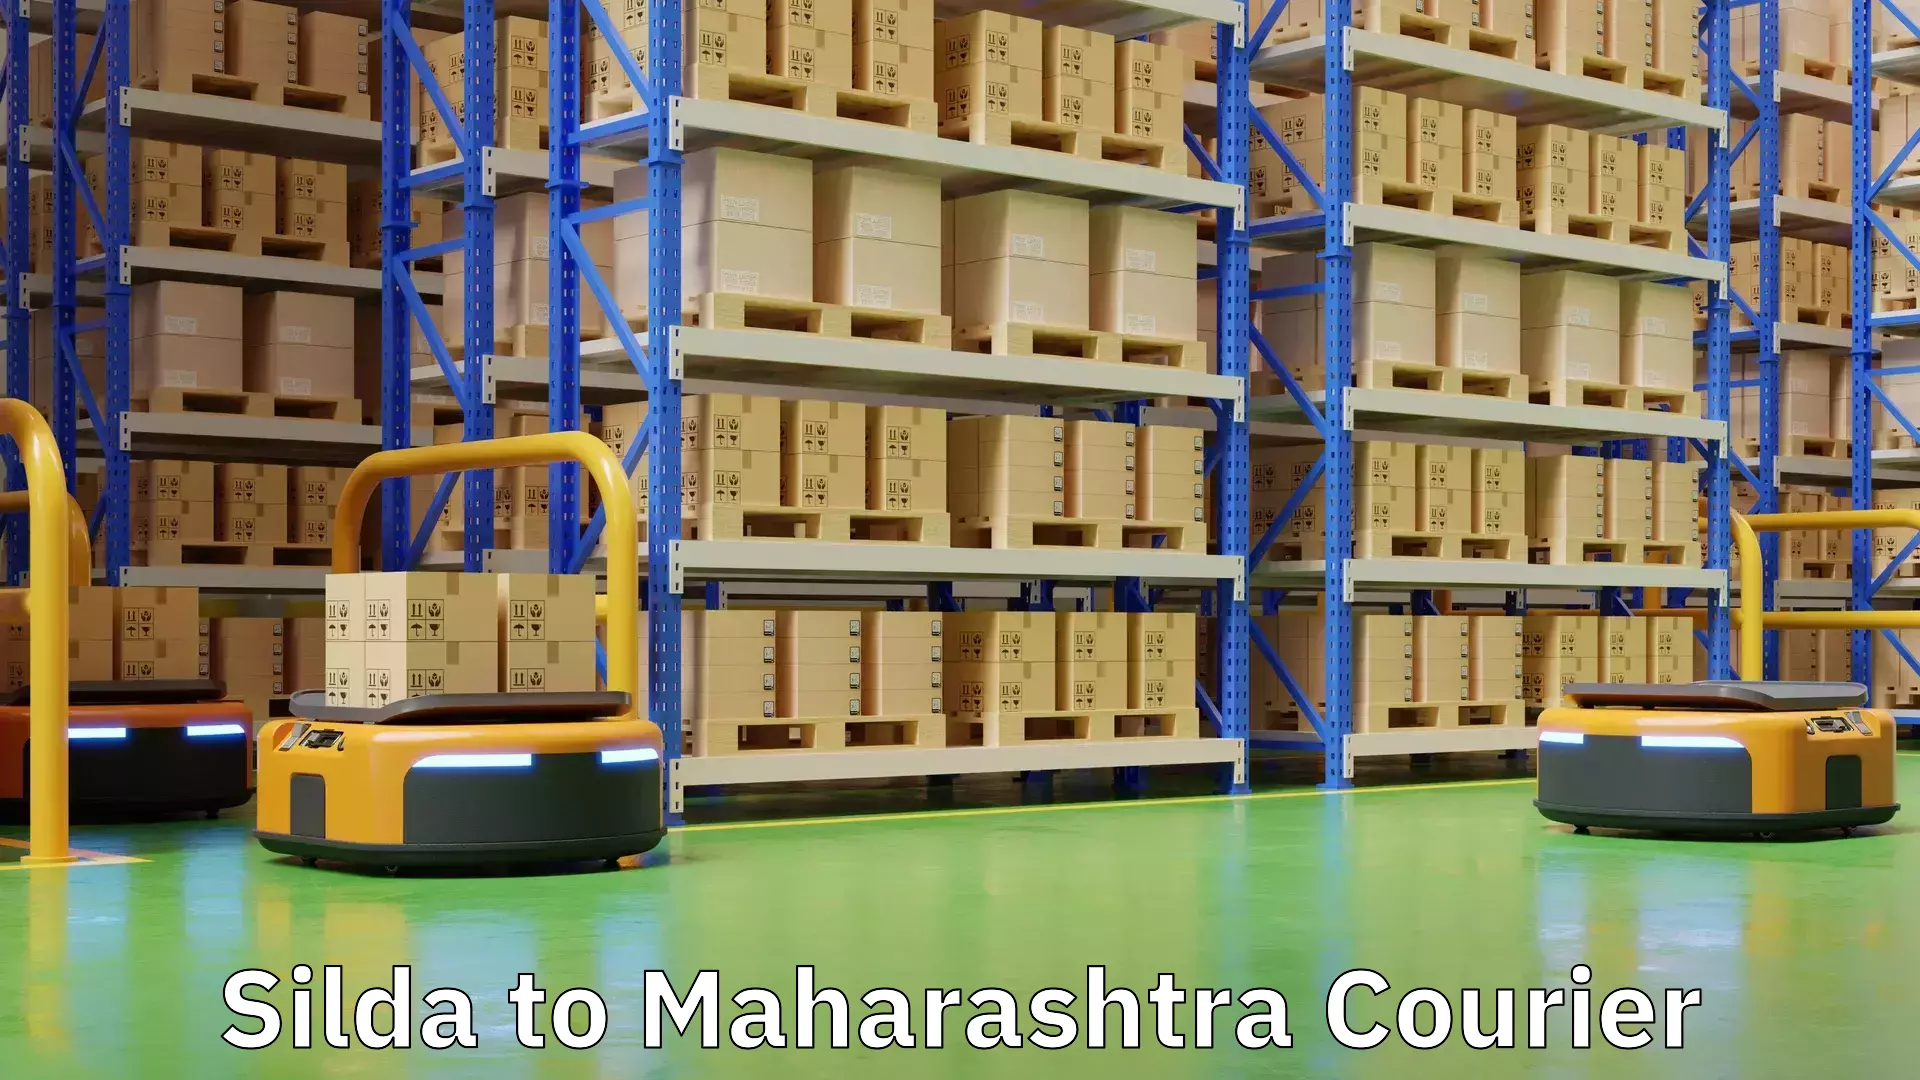 Quality courier services Silda to Maharashtra